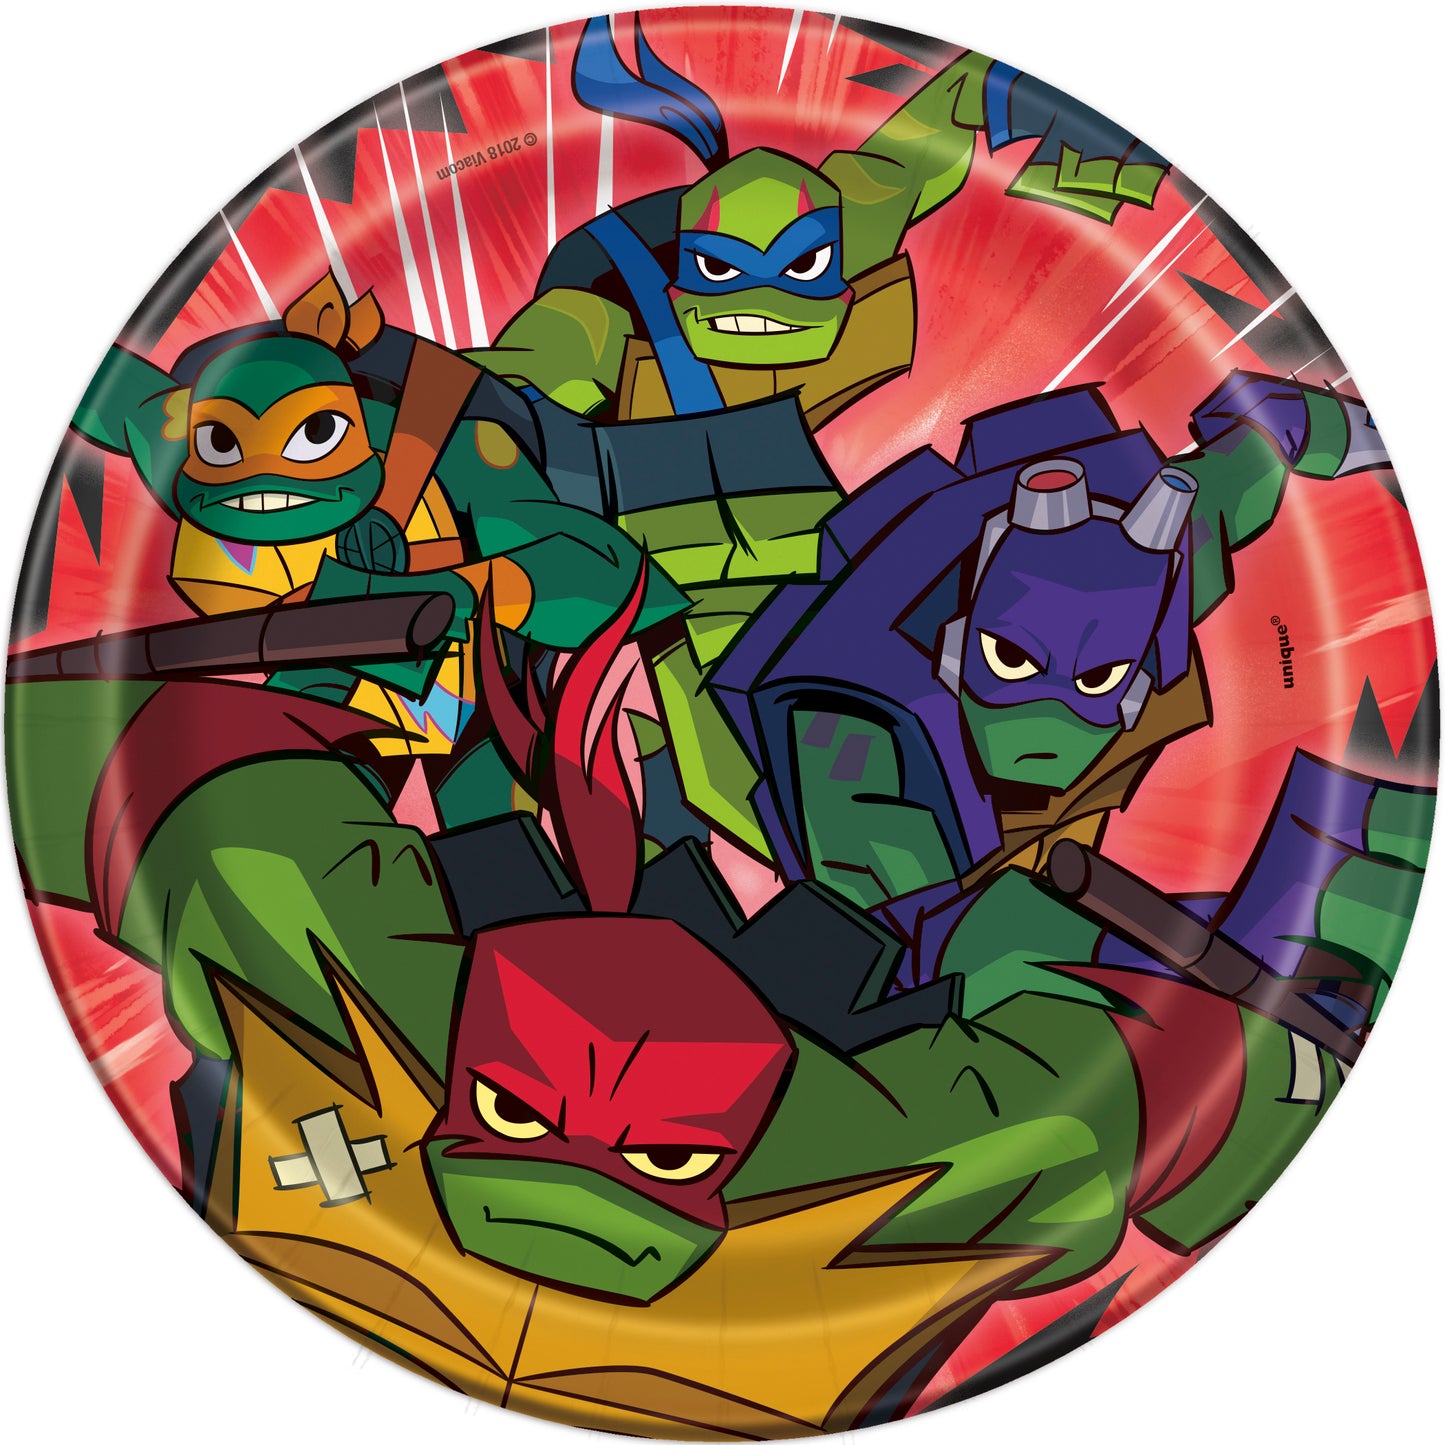 Teenage Mutant Ninja Turtles Paquete de artículos para fiestas